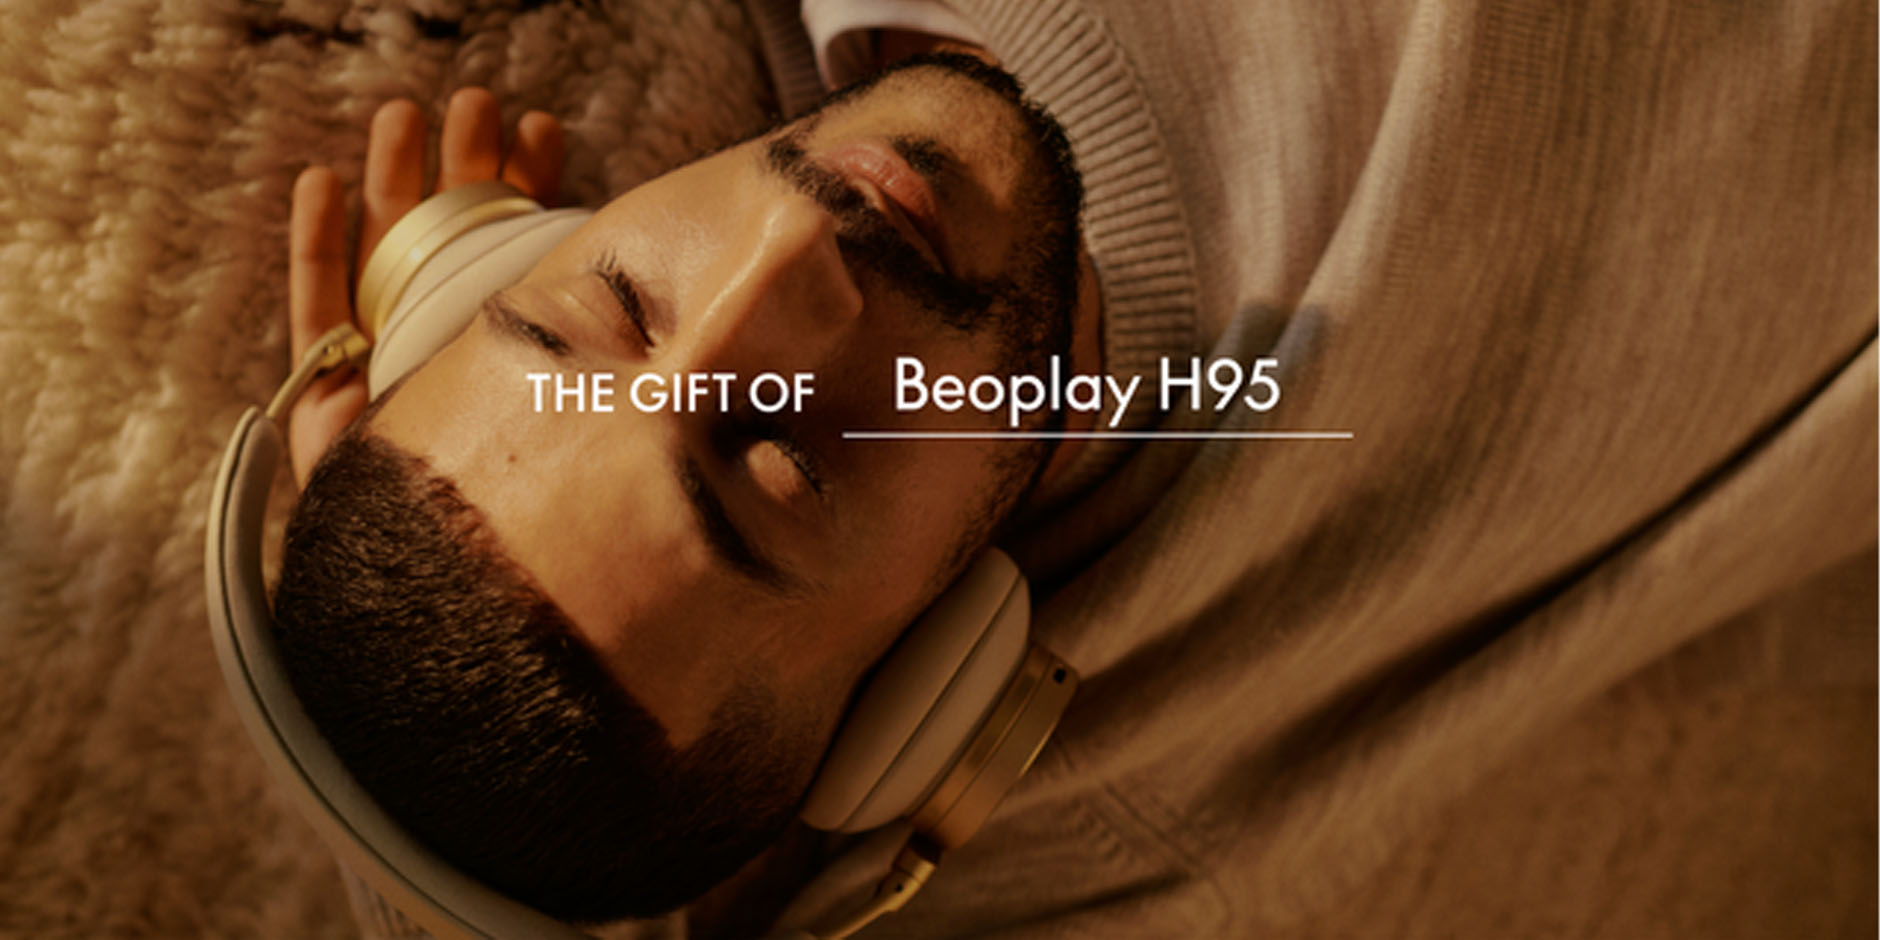 Beoplay H95 headphones